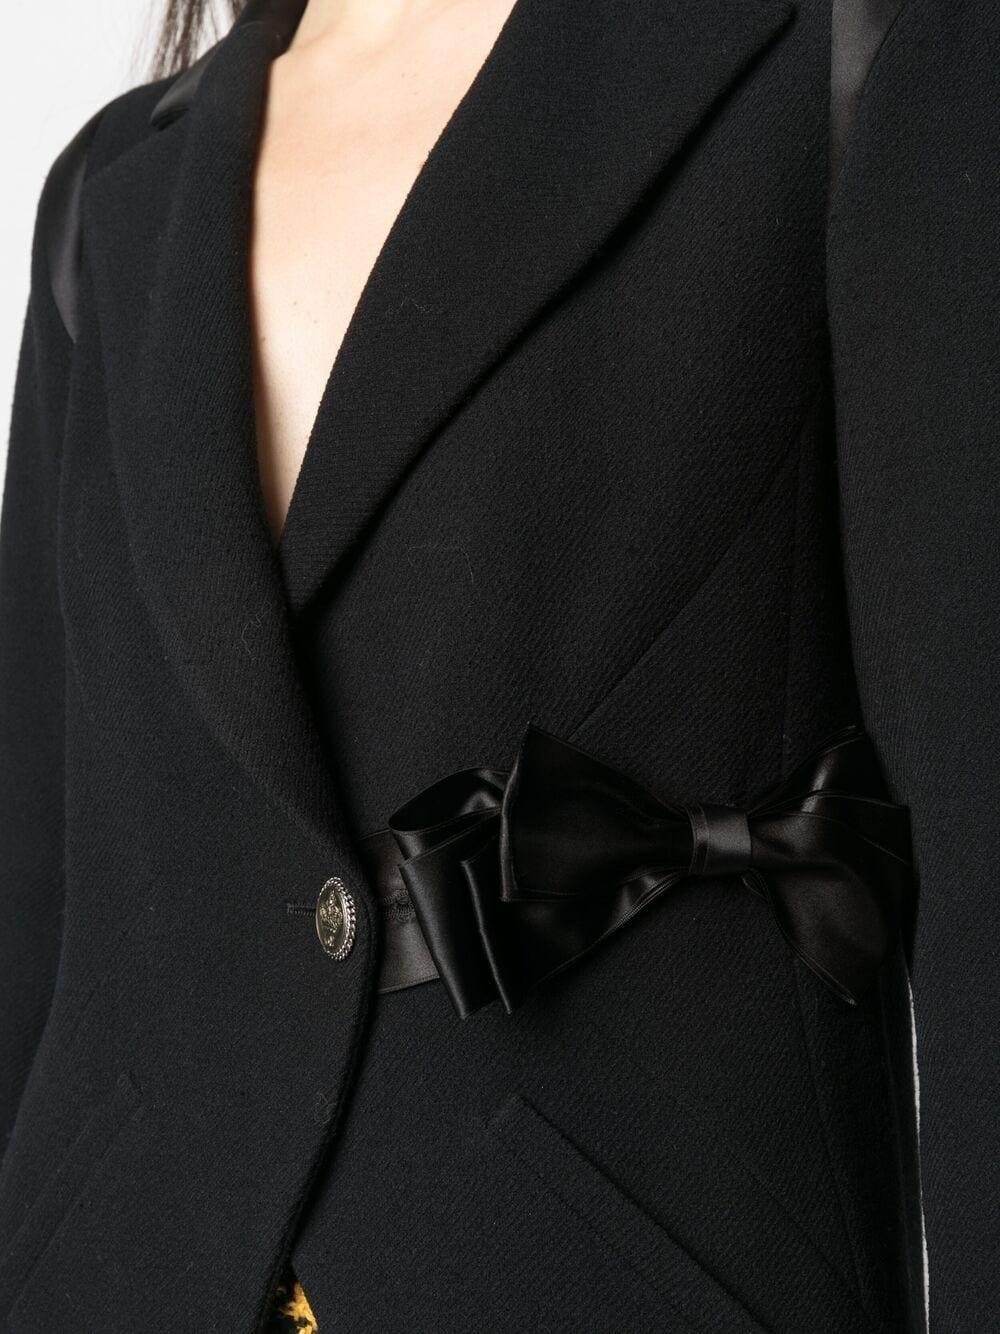 Chanel Paris / London Runway Black Tweed Jacket For Sale 1